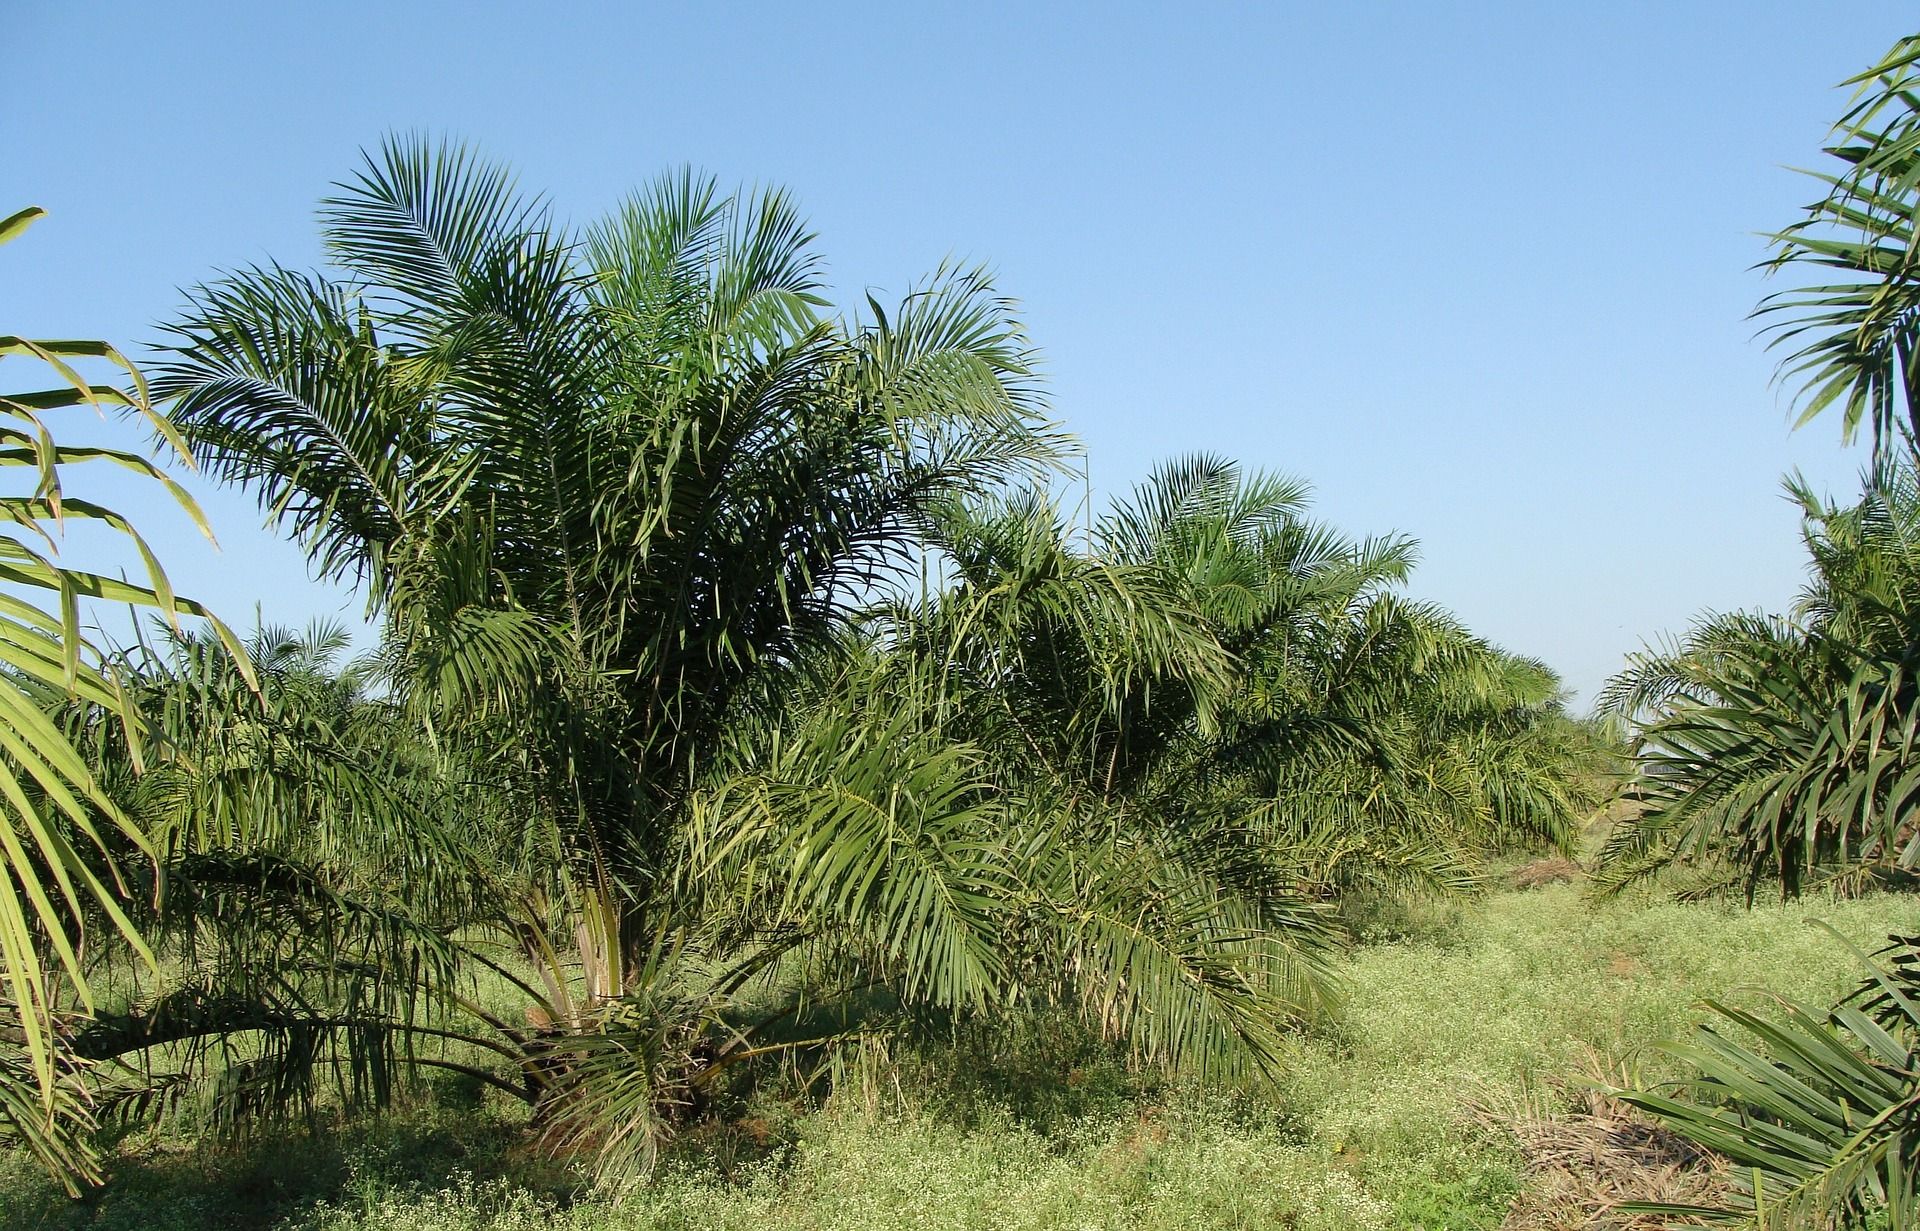 Cultivo de aceite de palma, que se utiliza para la fabricación de biocombustible / Foto: Bishnu Sarangi - Pixabay